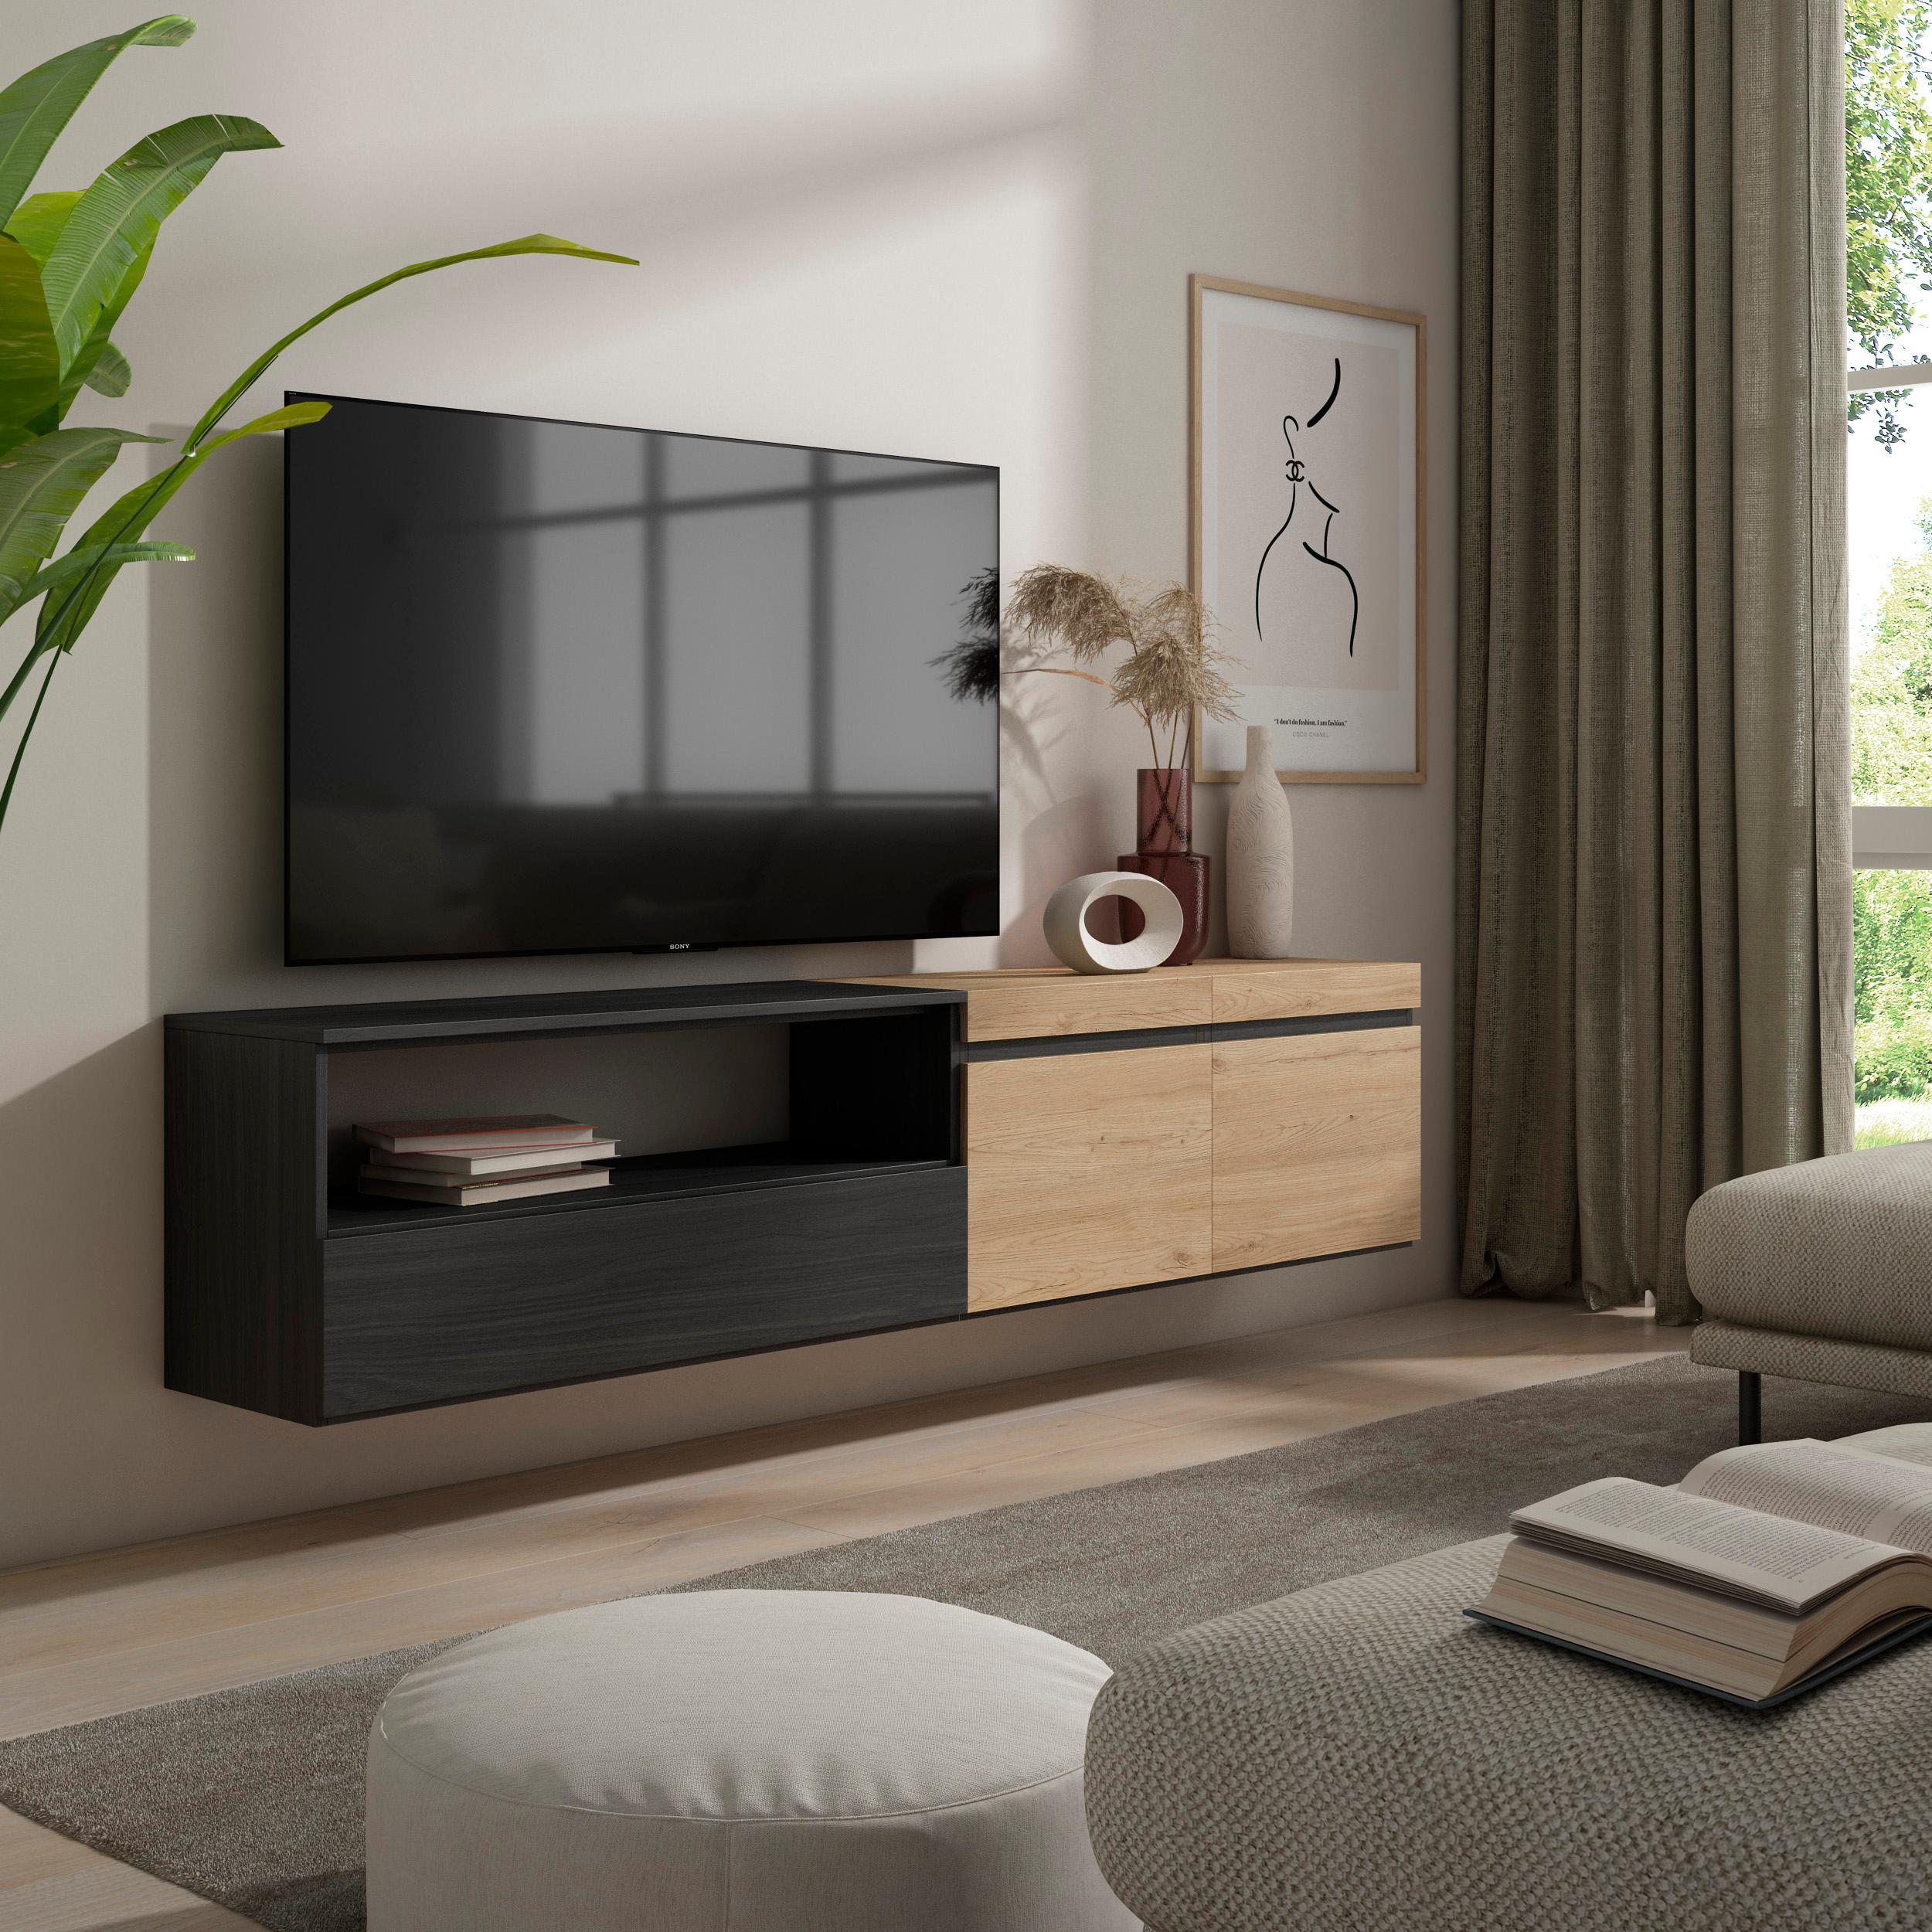 SKRAUT HOME - Skraut Home - Mueble de Televisión en melamina de alta calidad - Veteado de madera - Tacto poroso - Estilo Moderno Elegante